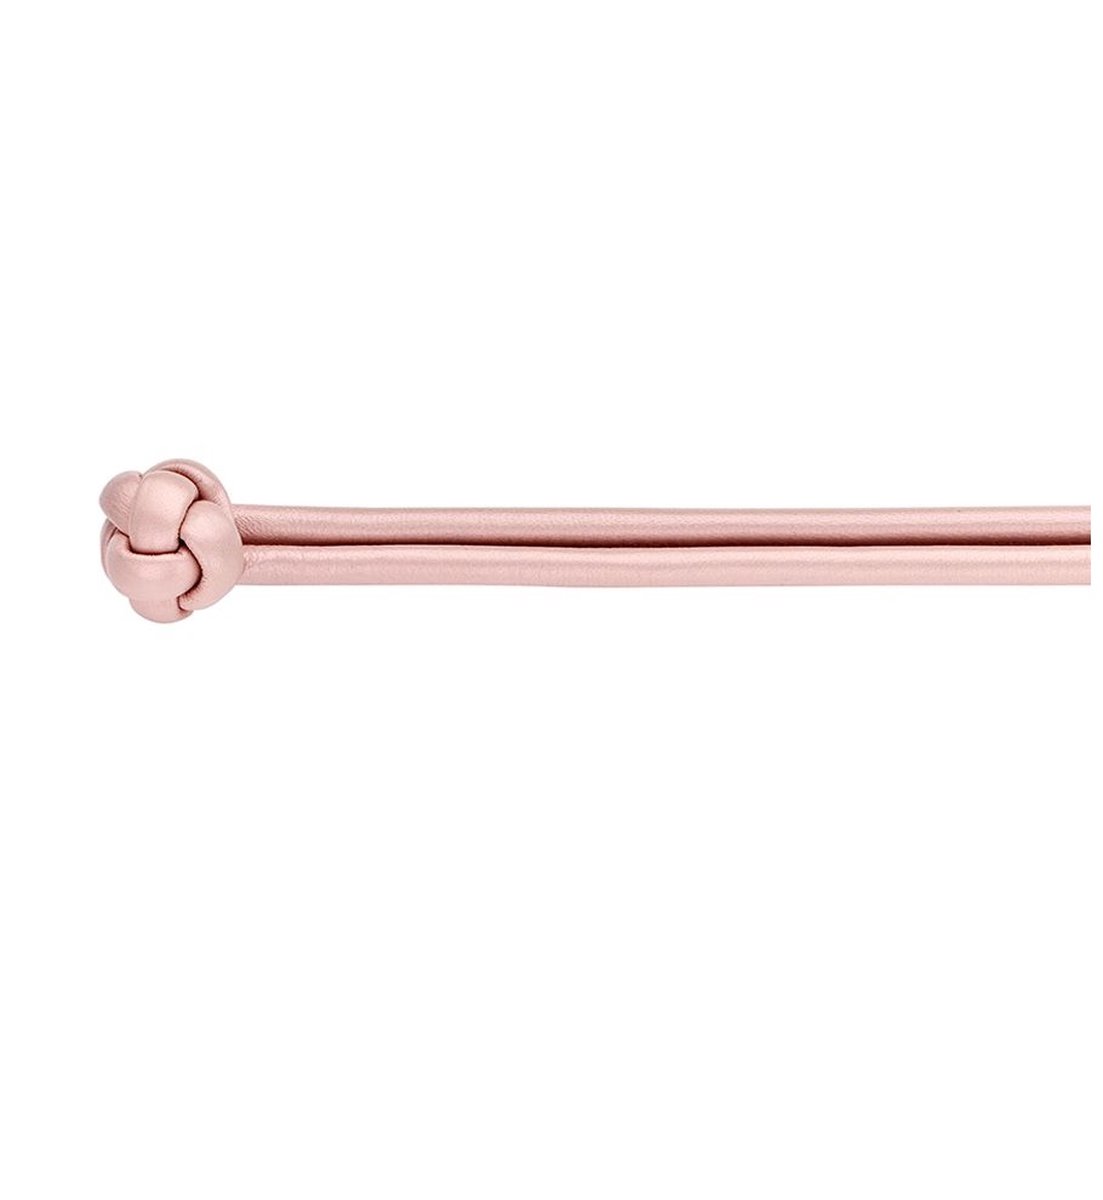 Tirisi Moda – TM2095PP/39 – armband - leer - pink – uitverkoop